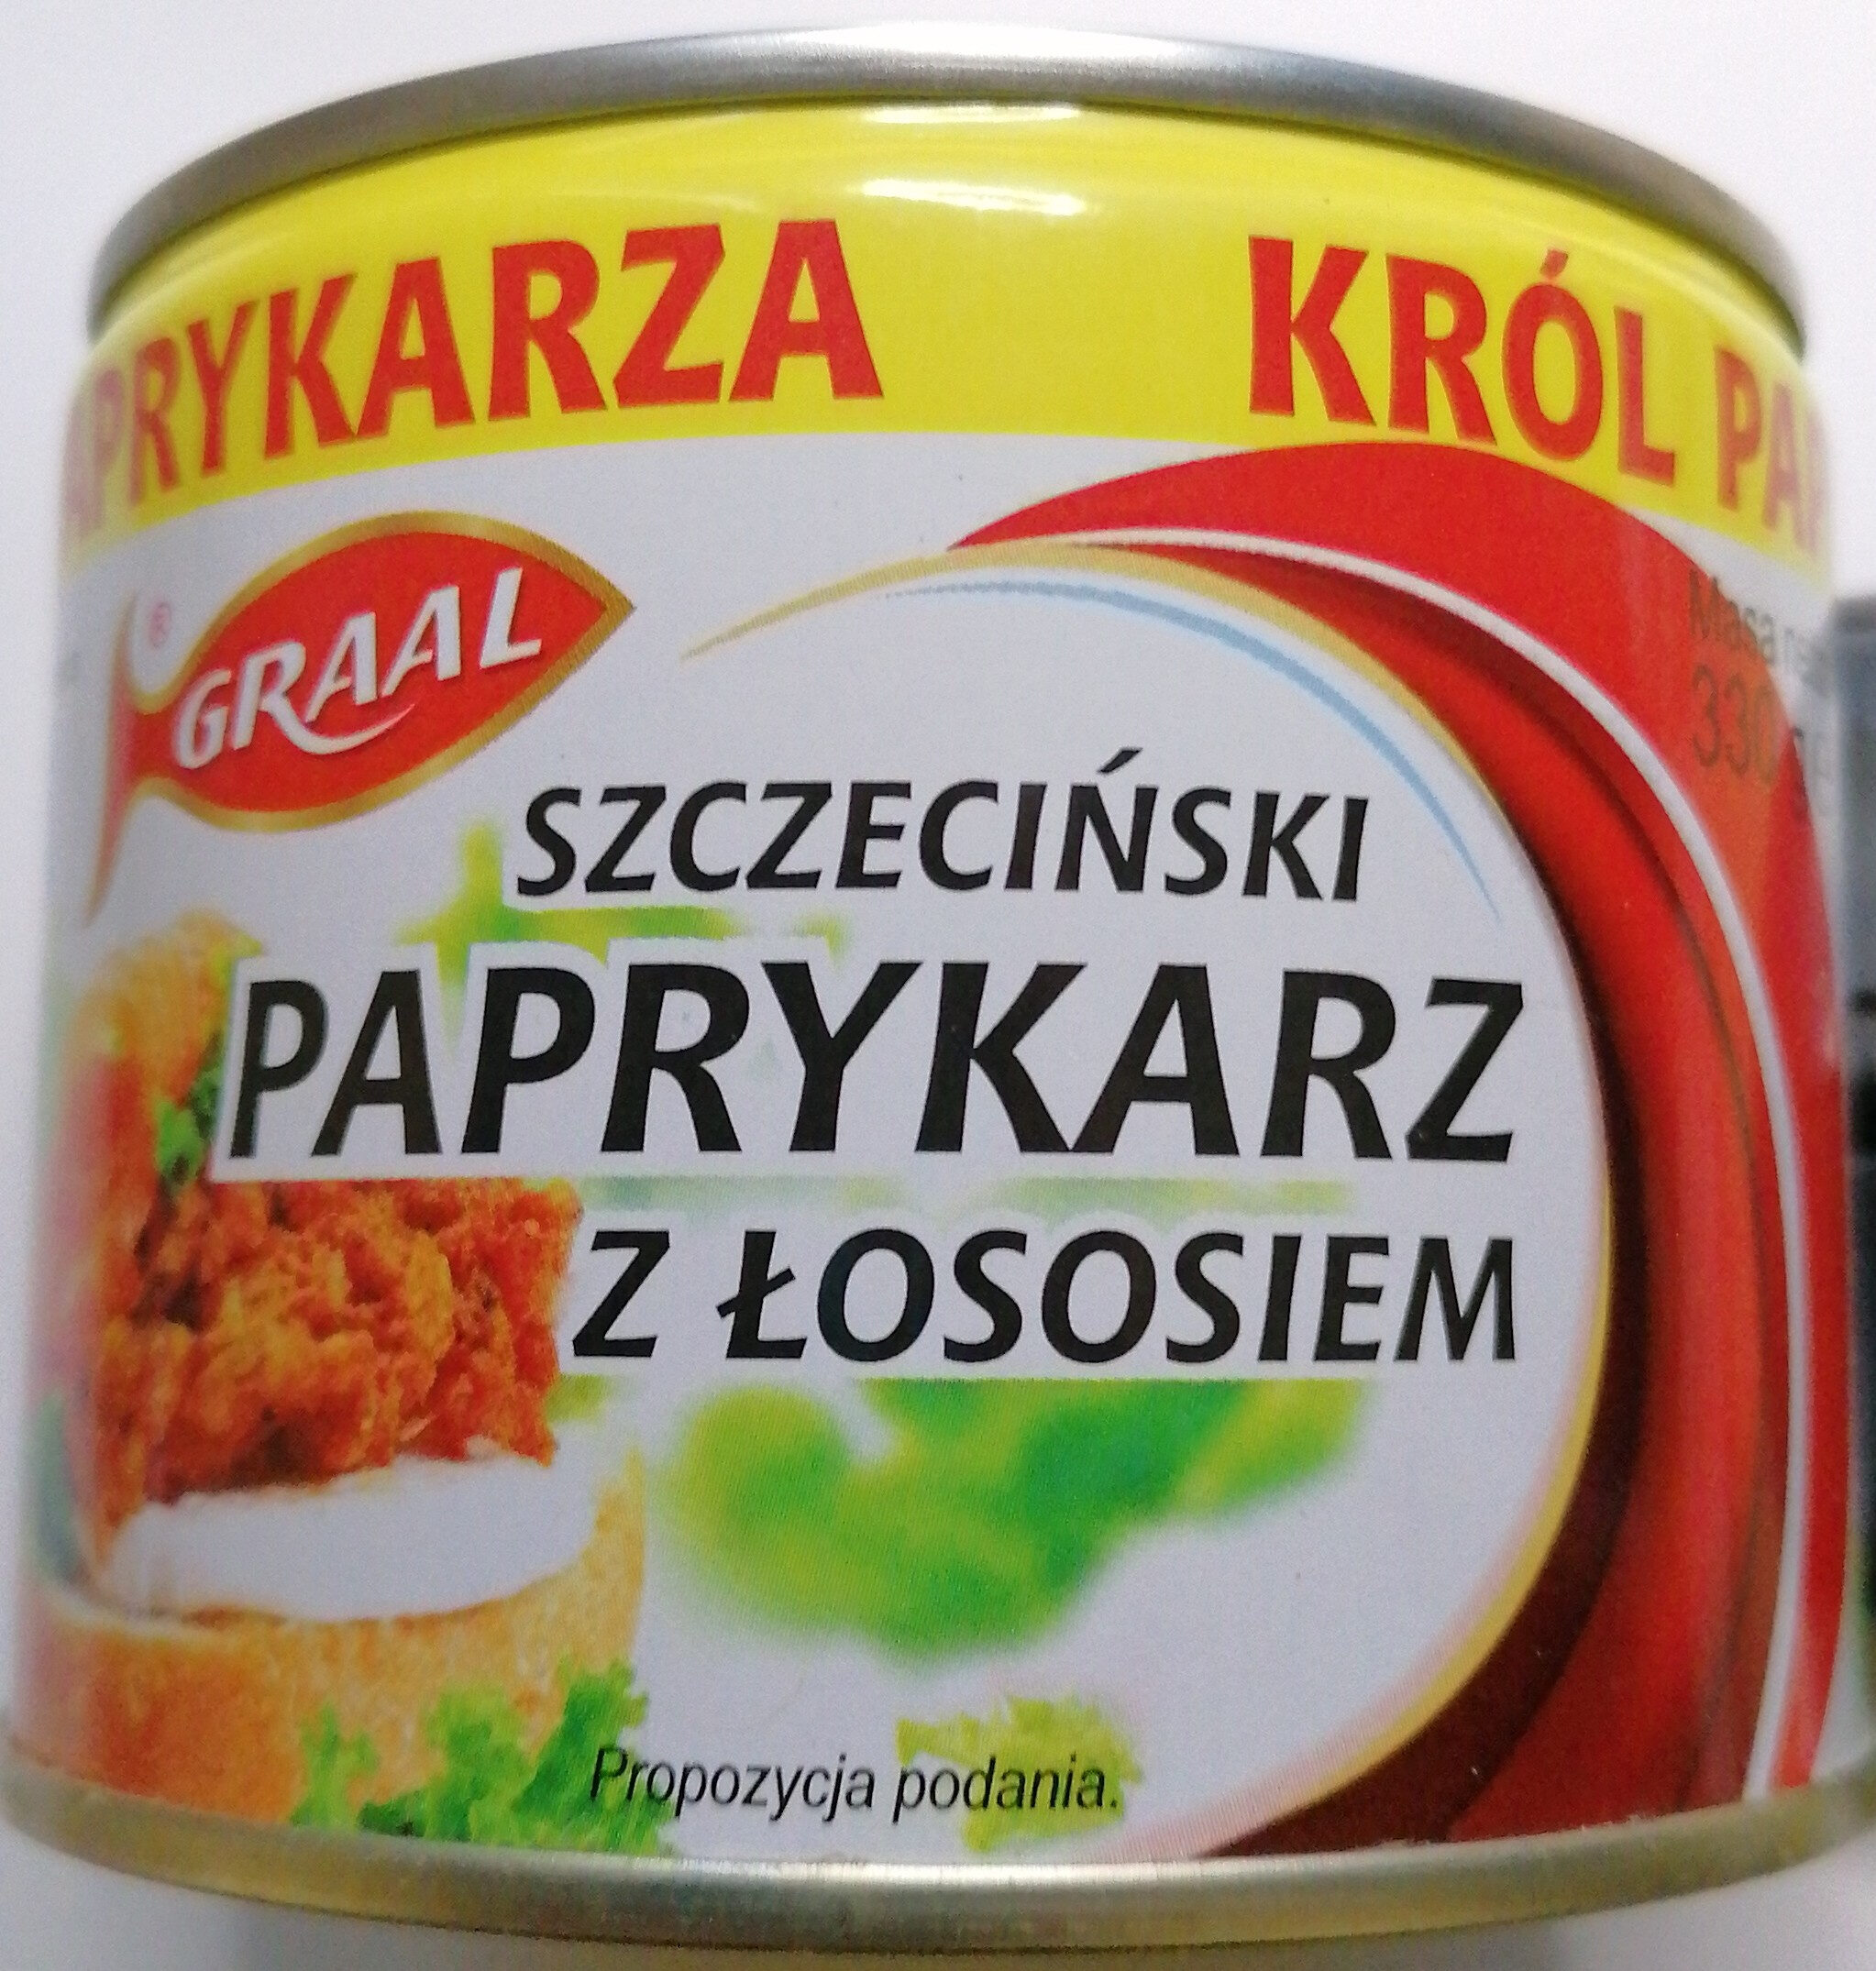 Paprykarz Szczeciński z łososiem. - Product - pl